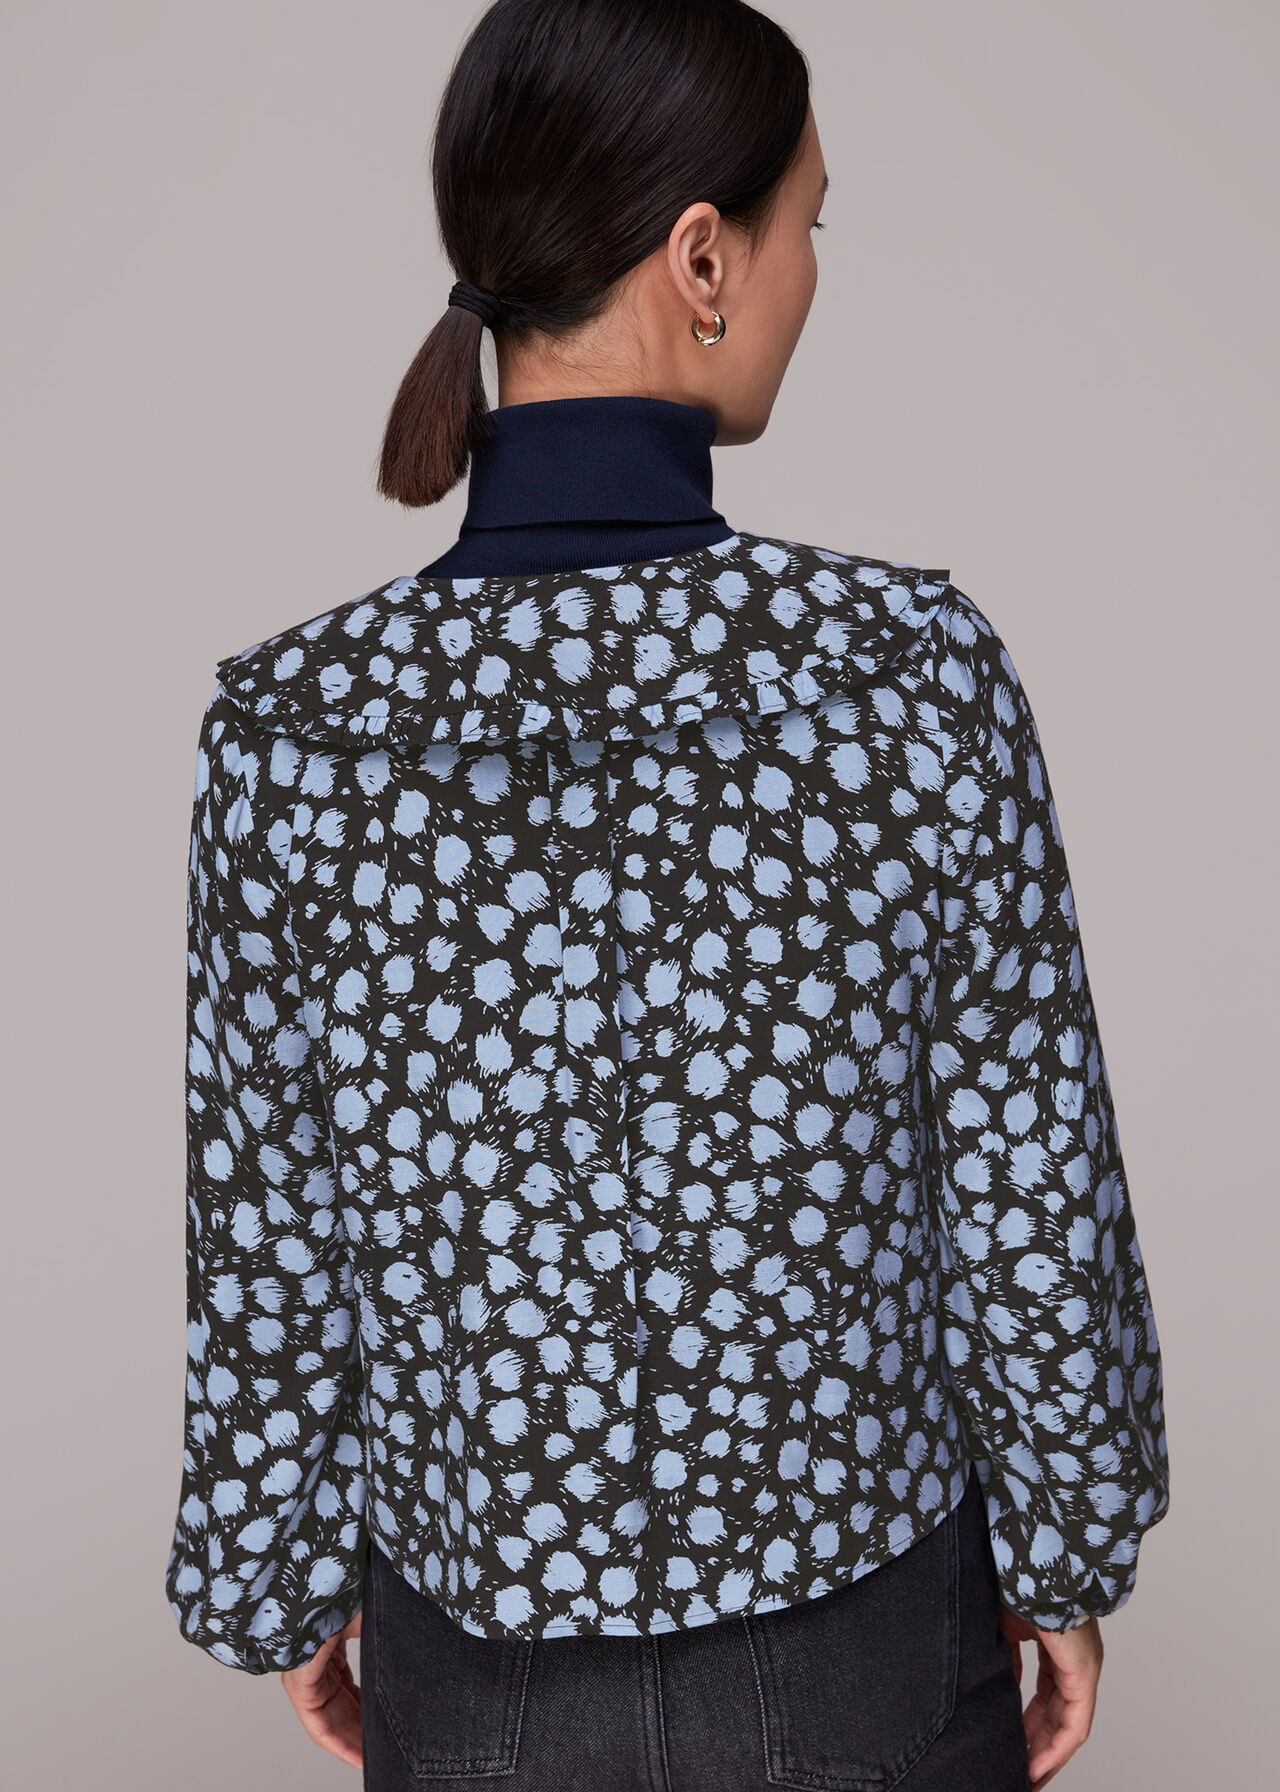 Dalmatian Print Collar Top